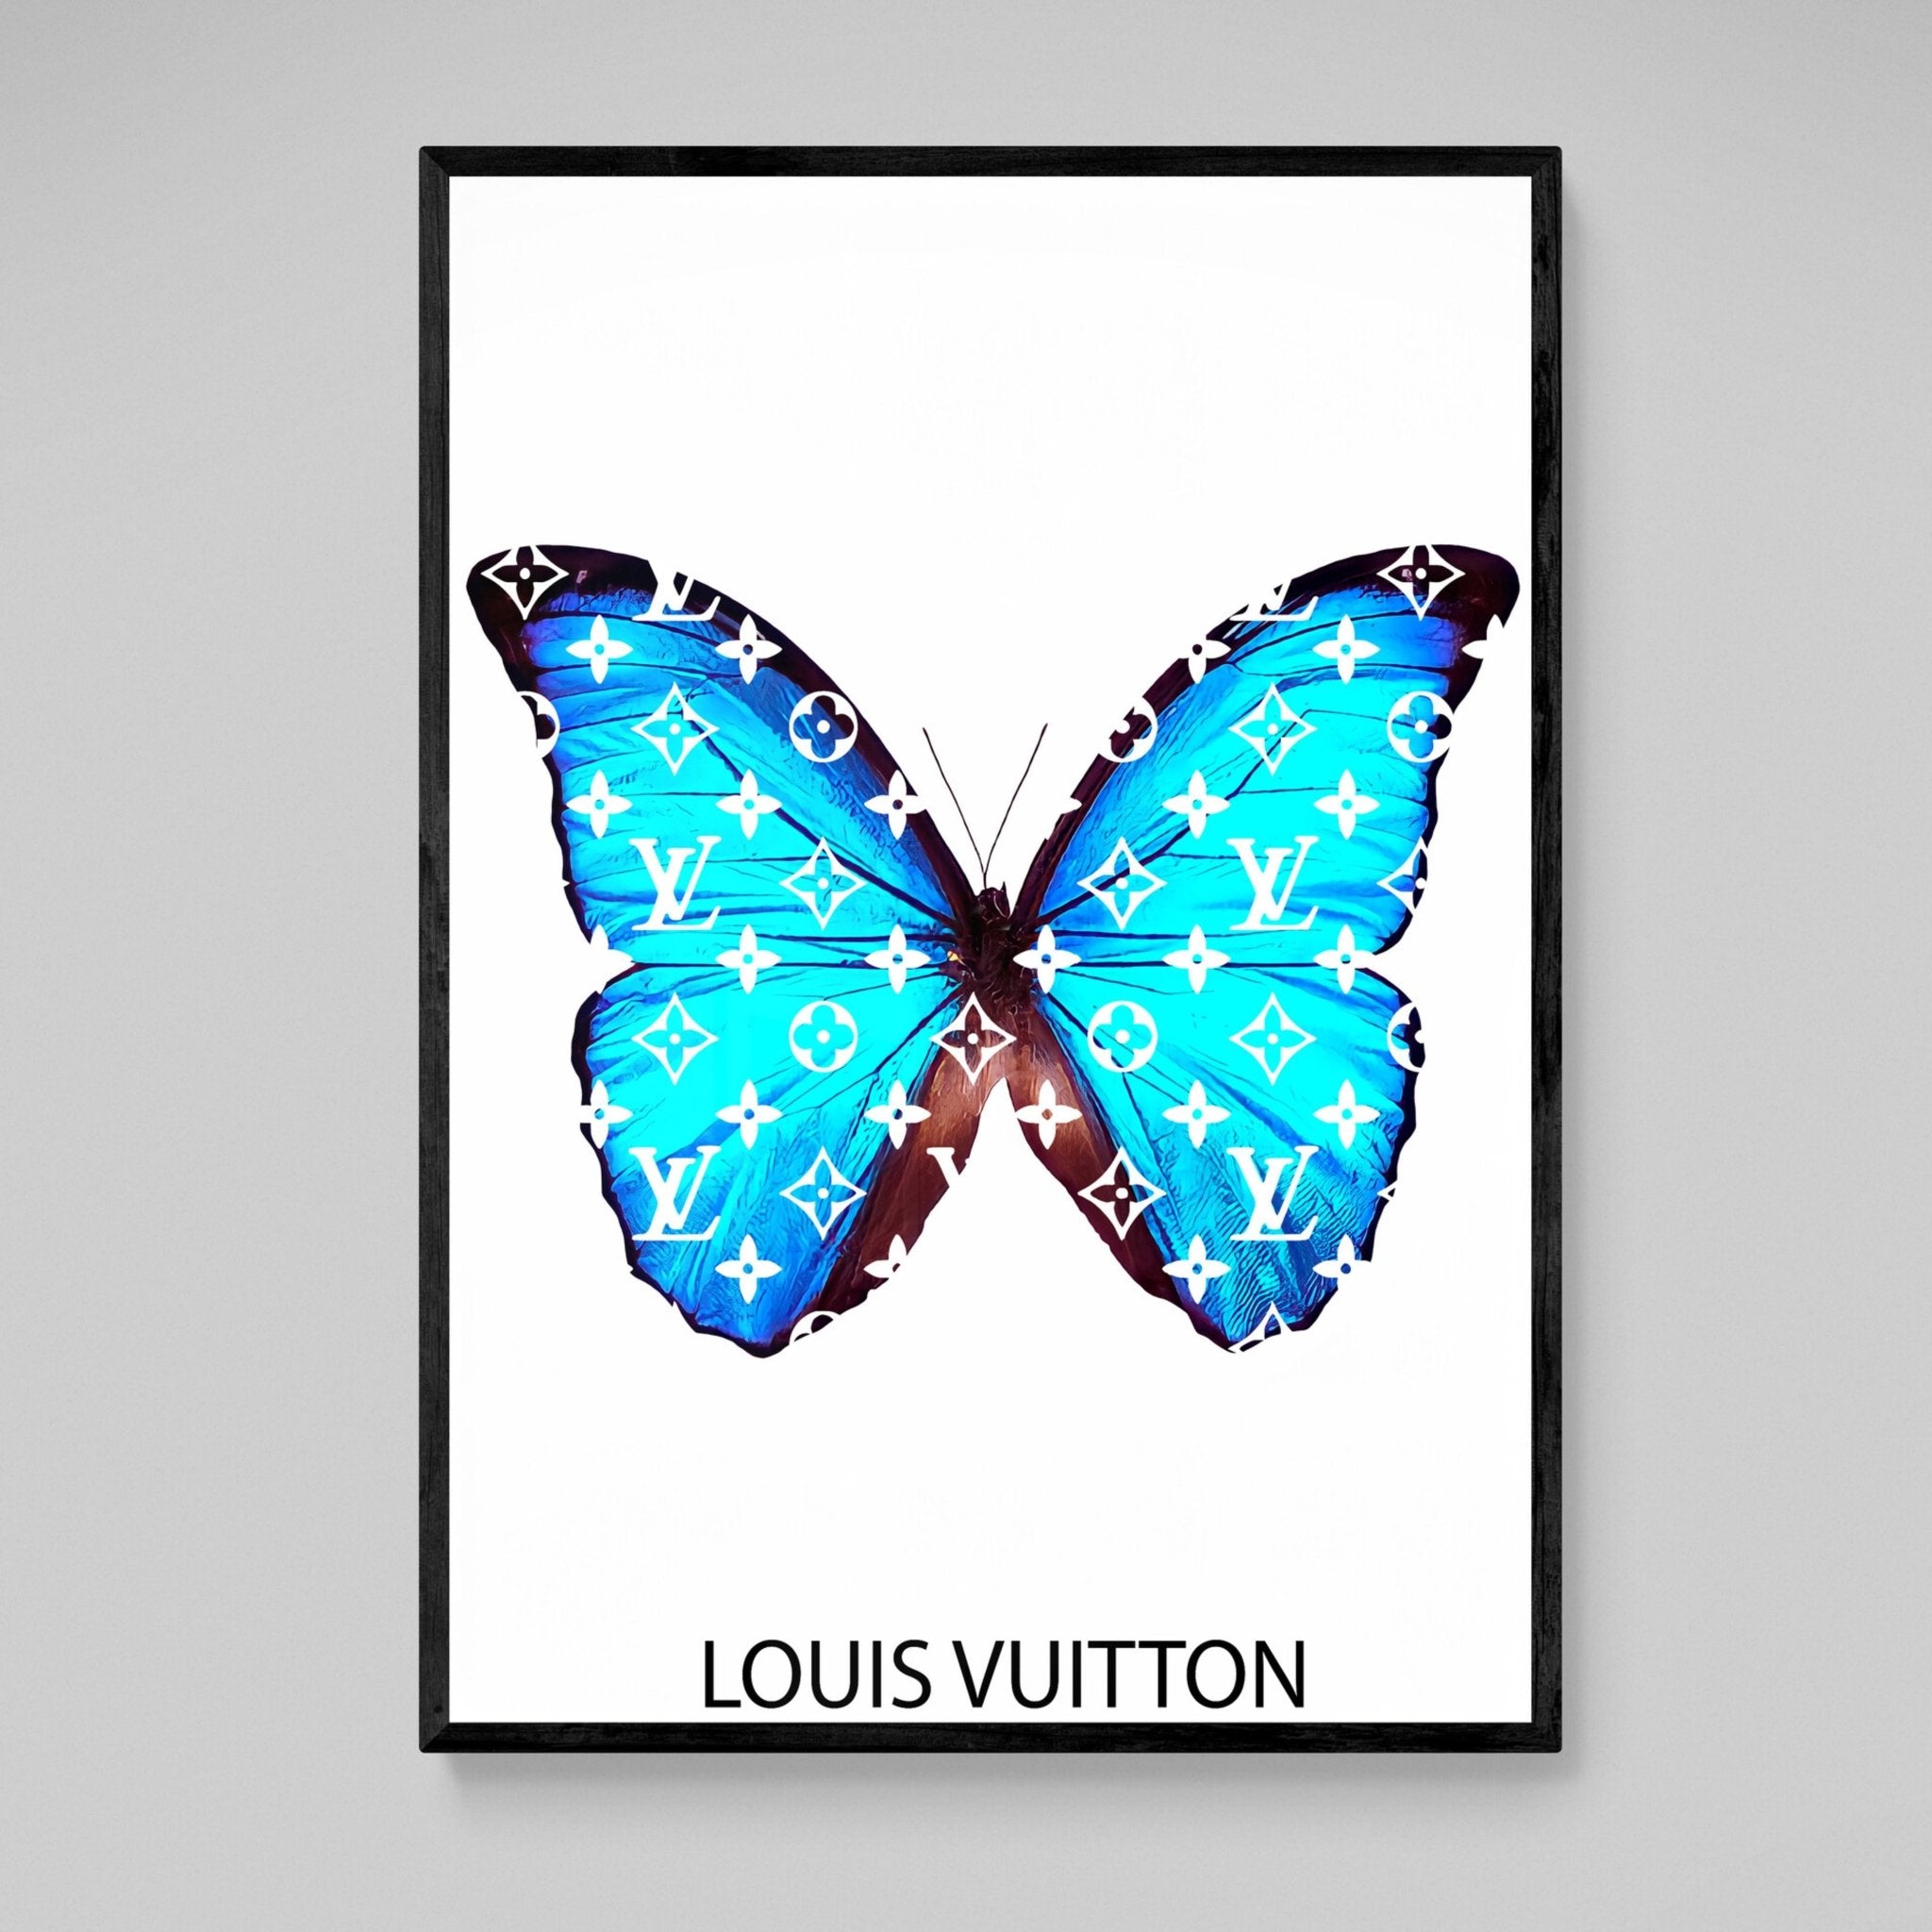 Uda - Grenade Louis Vuitton, Digital Arts by Morgan Paslier